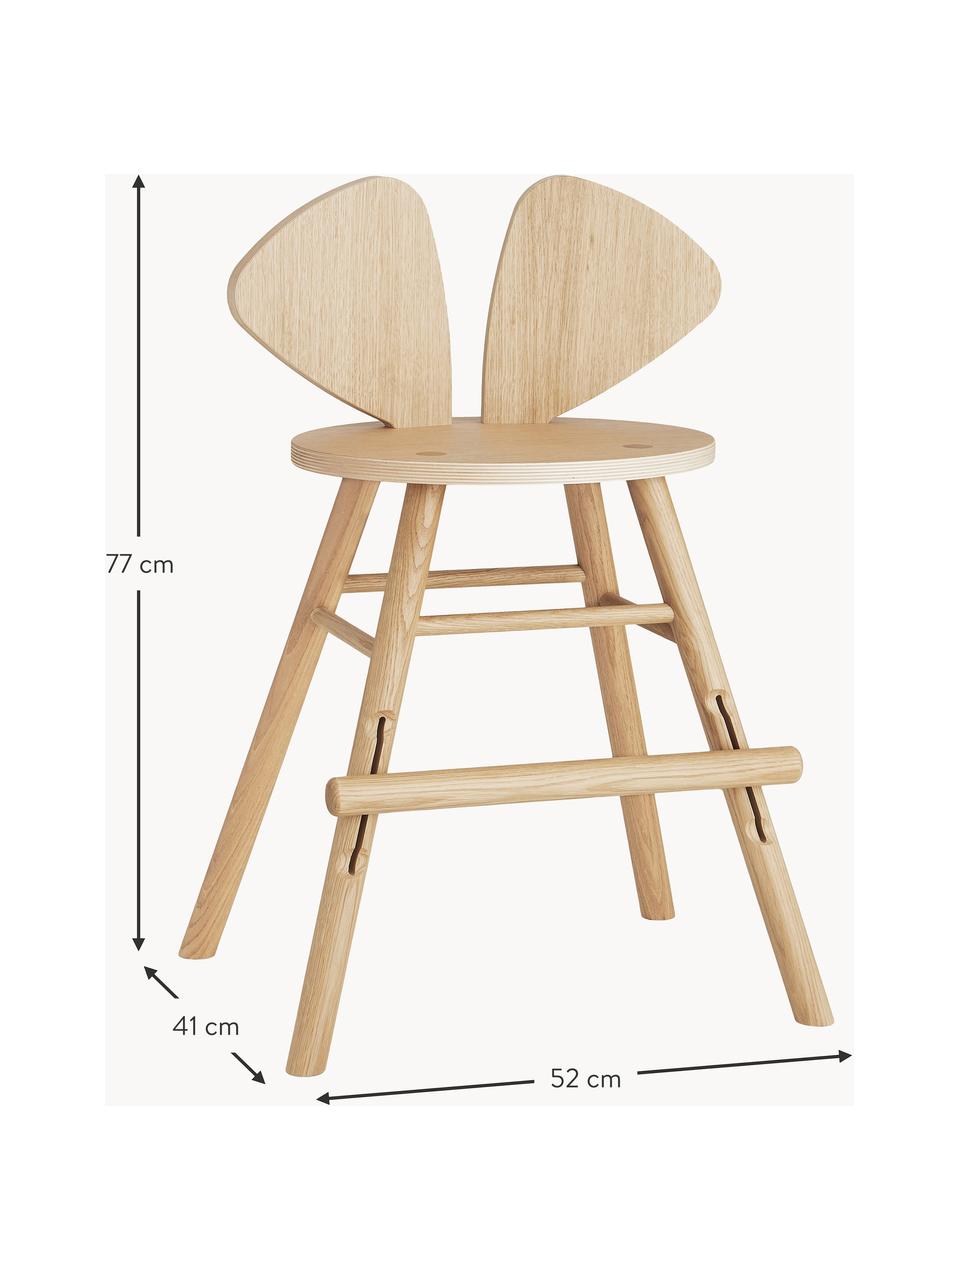 Chaise en bois pour enfant Mouse, Bois de chêne, laqué

Ce produit est fabriqué à partir de bois certifié FSC® issu d'une exploitation durable, Chêne, larg. 52 x prof. 41 cm